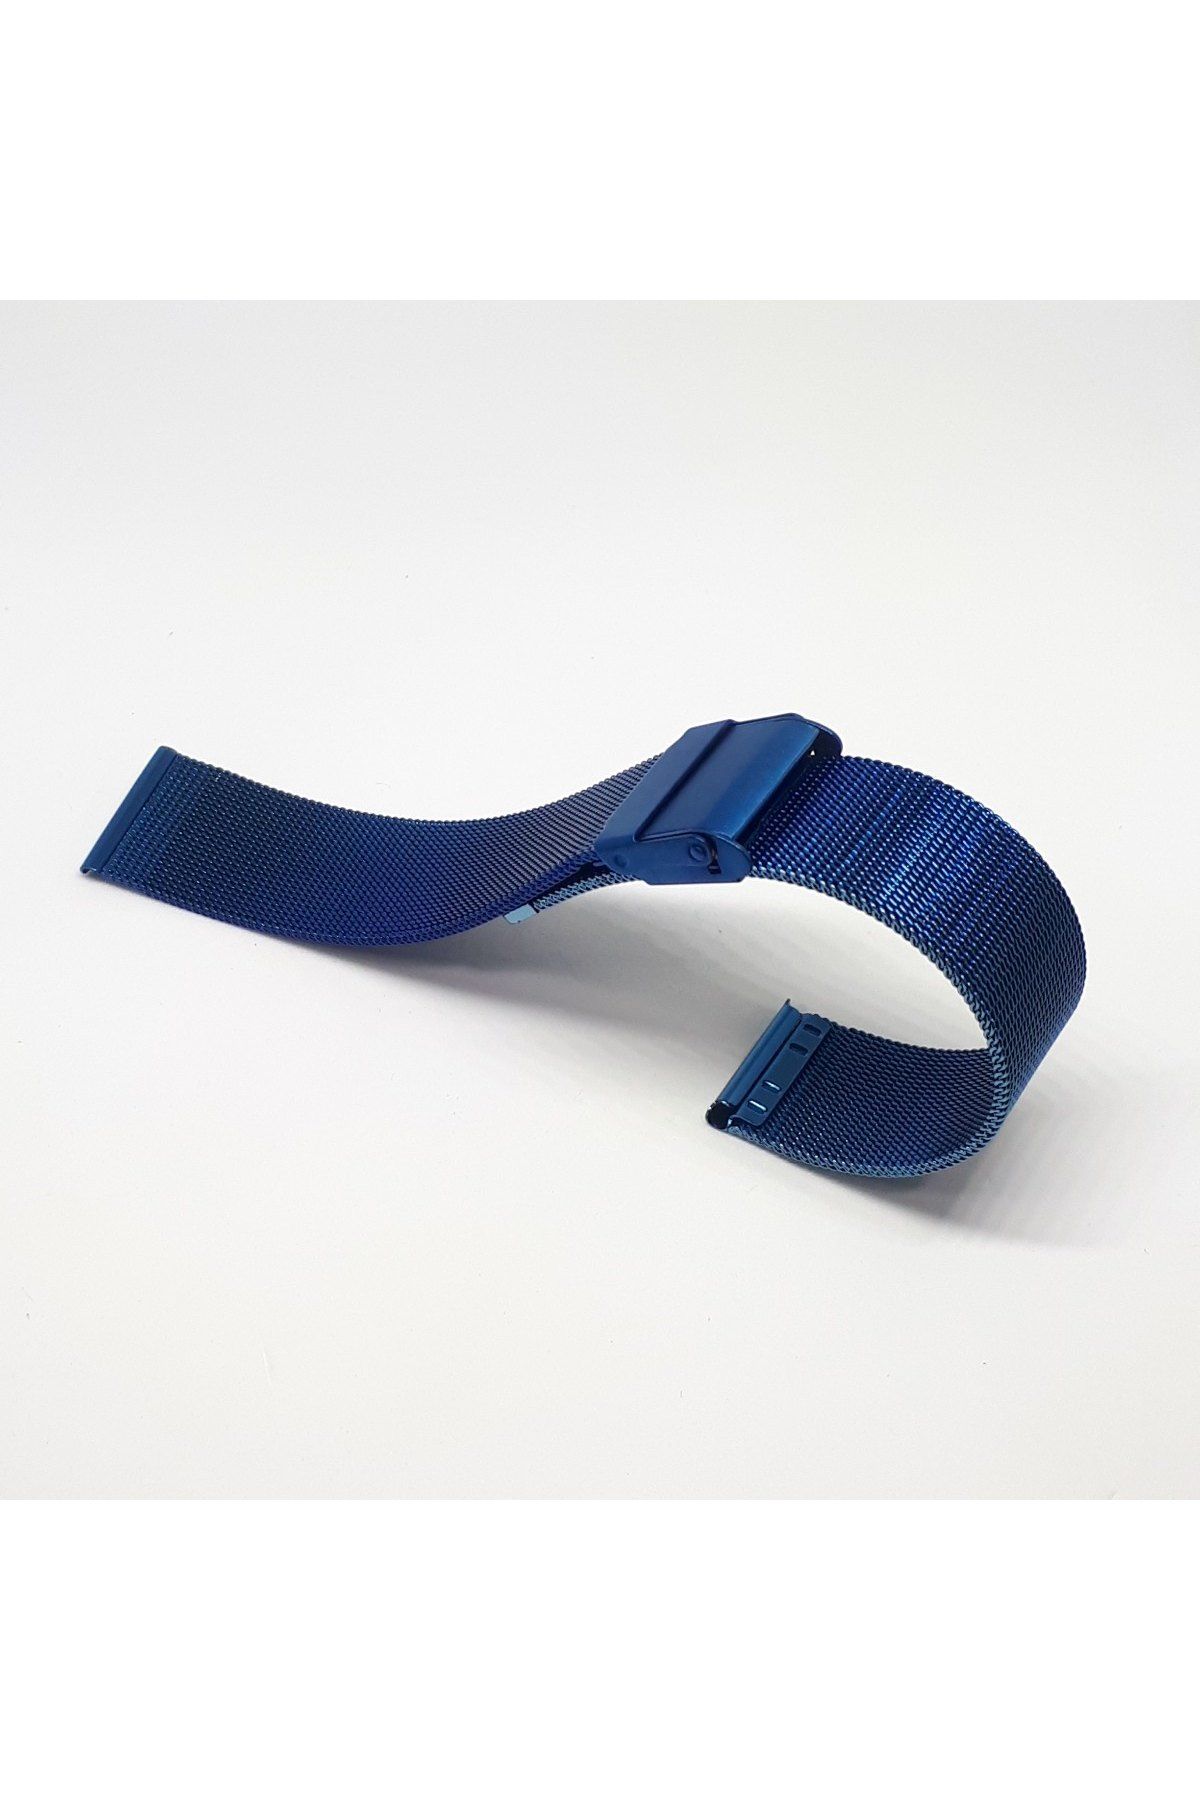 18mm Lacivert Mavi Renk Hasır Ince Örgü Çelik Kaplama Metal Saat Kordonu